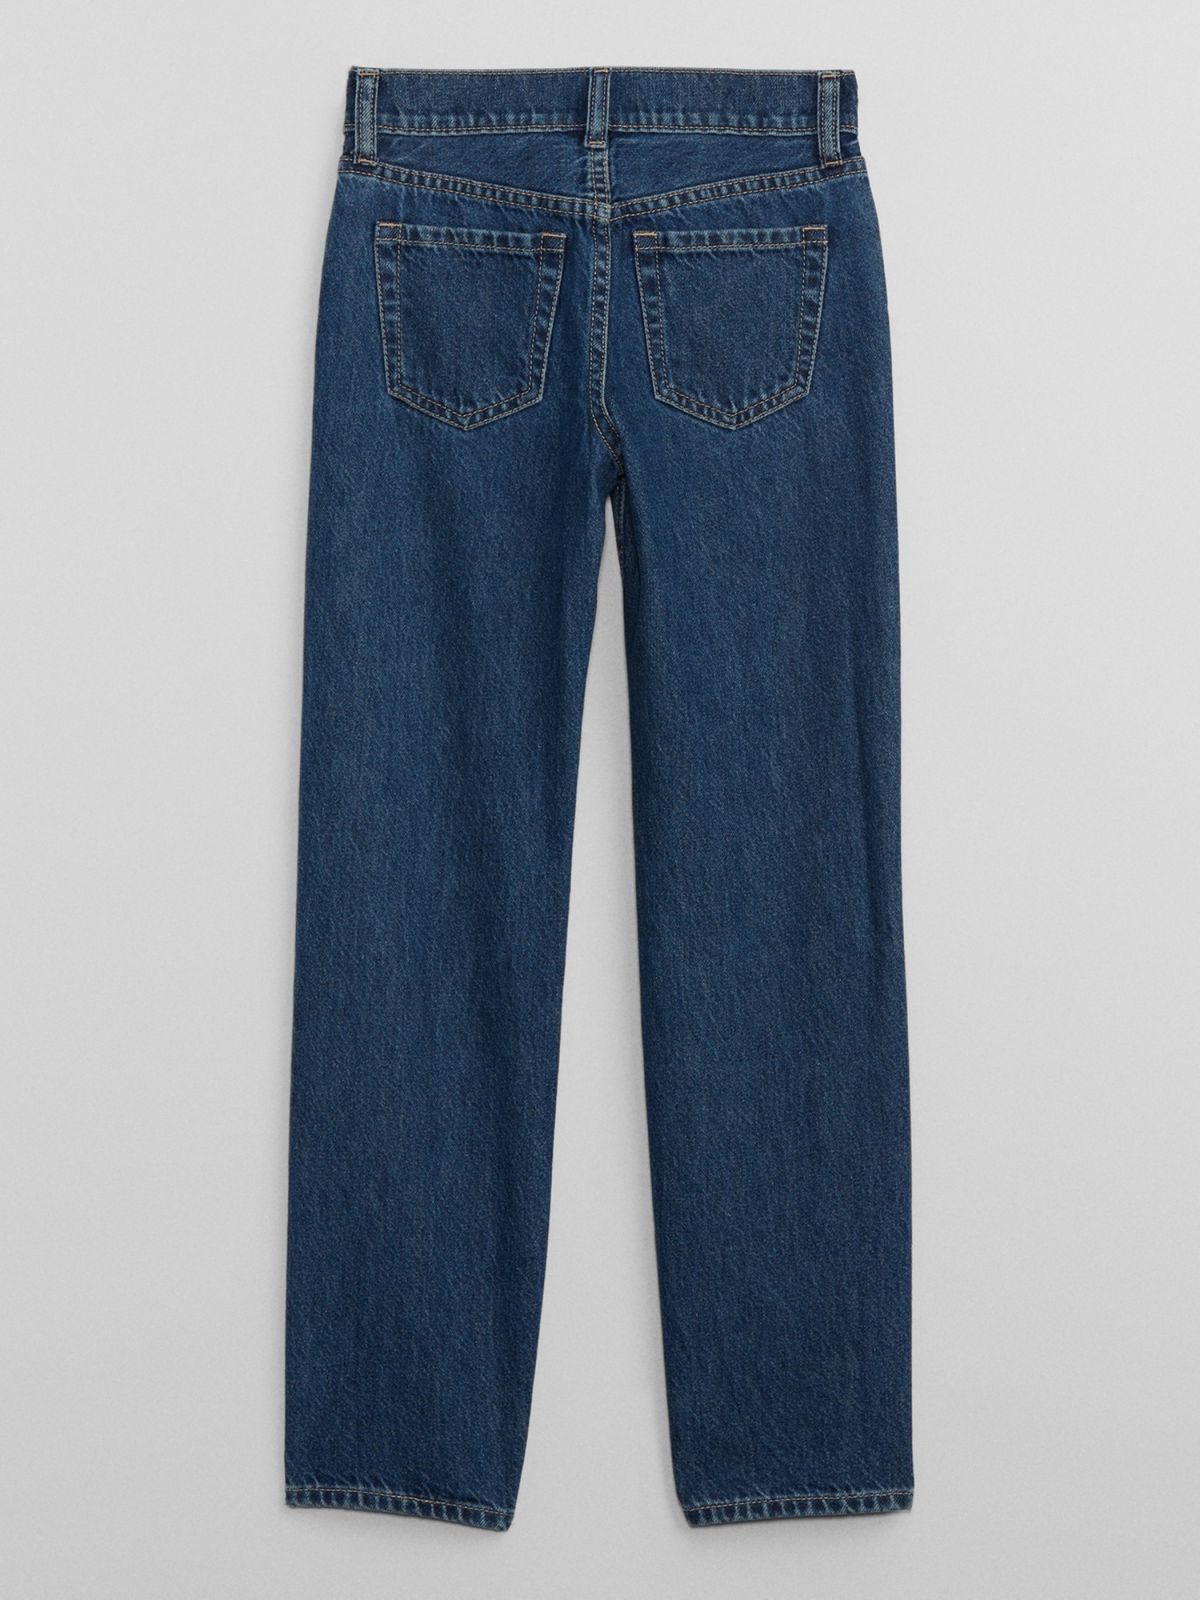  ג'ינס ארוך בעיטור ניטים / בנות של GAP